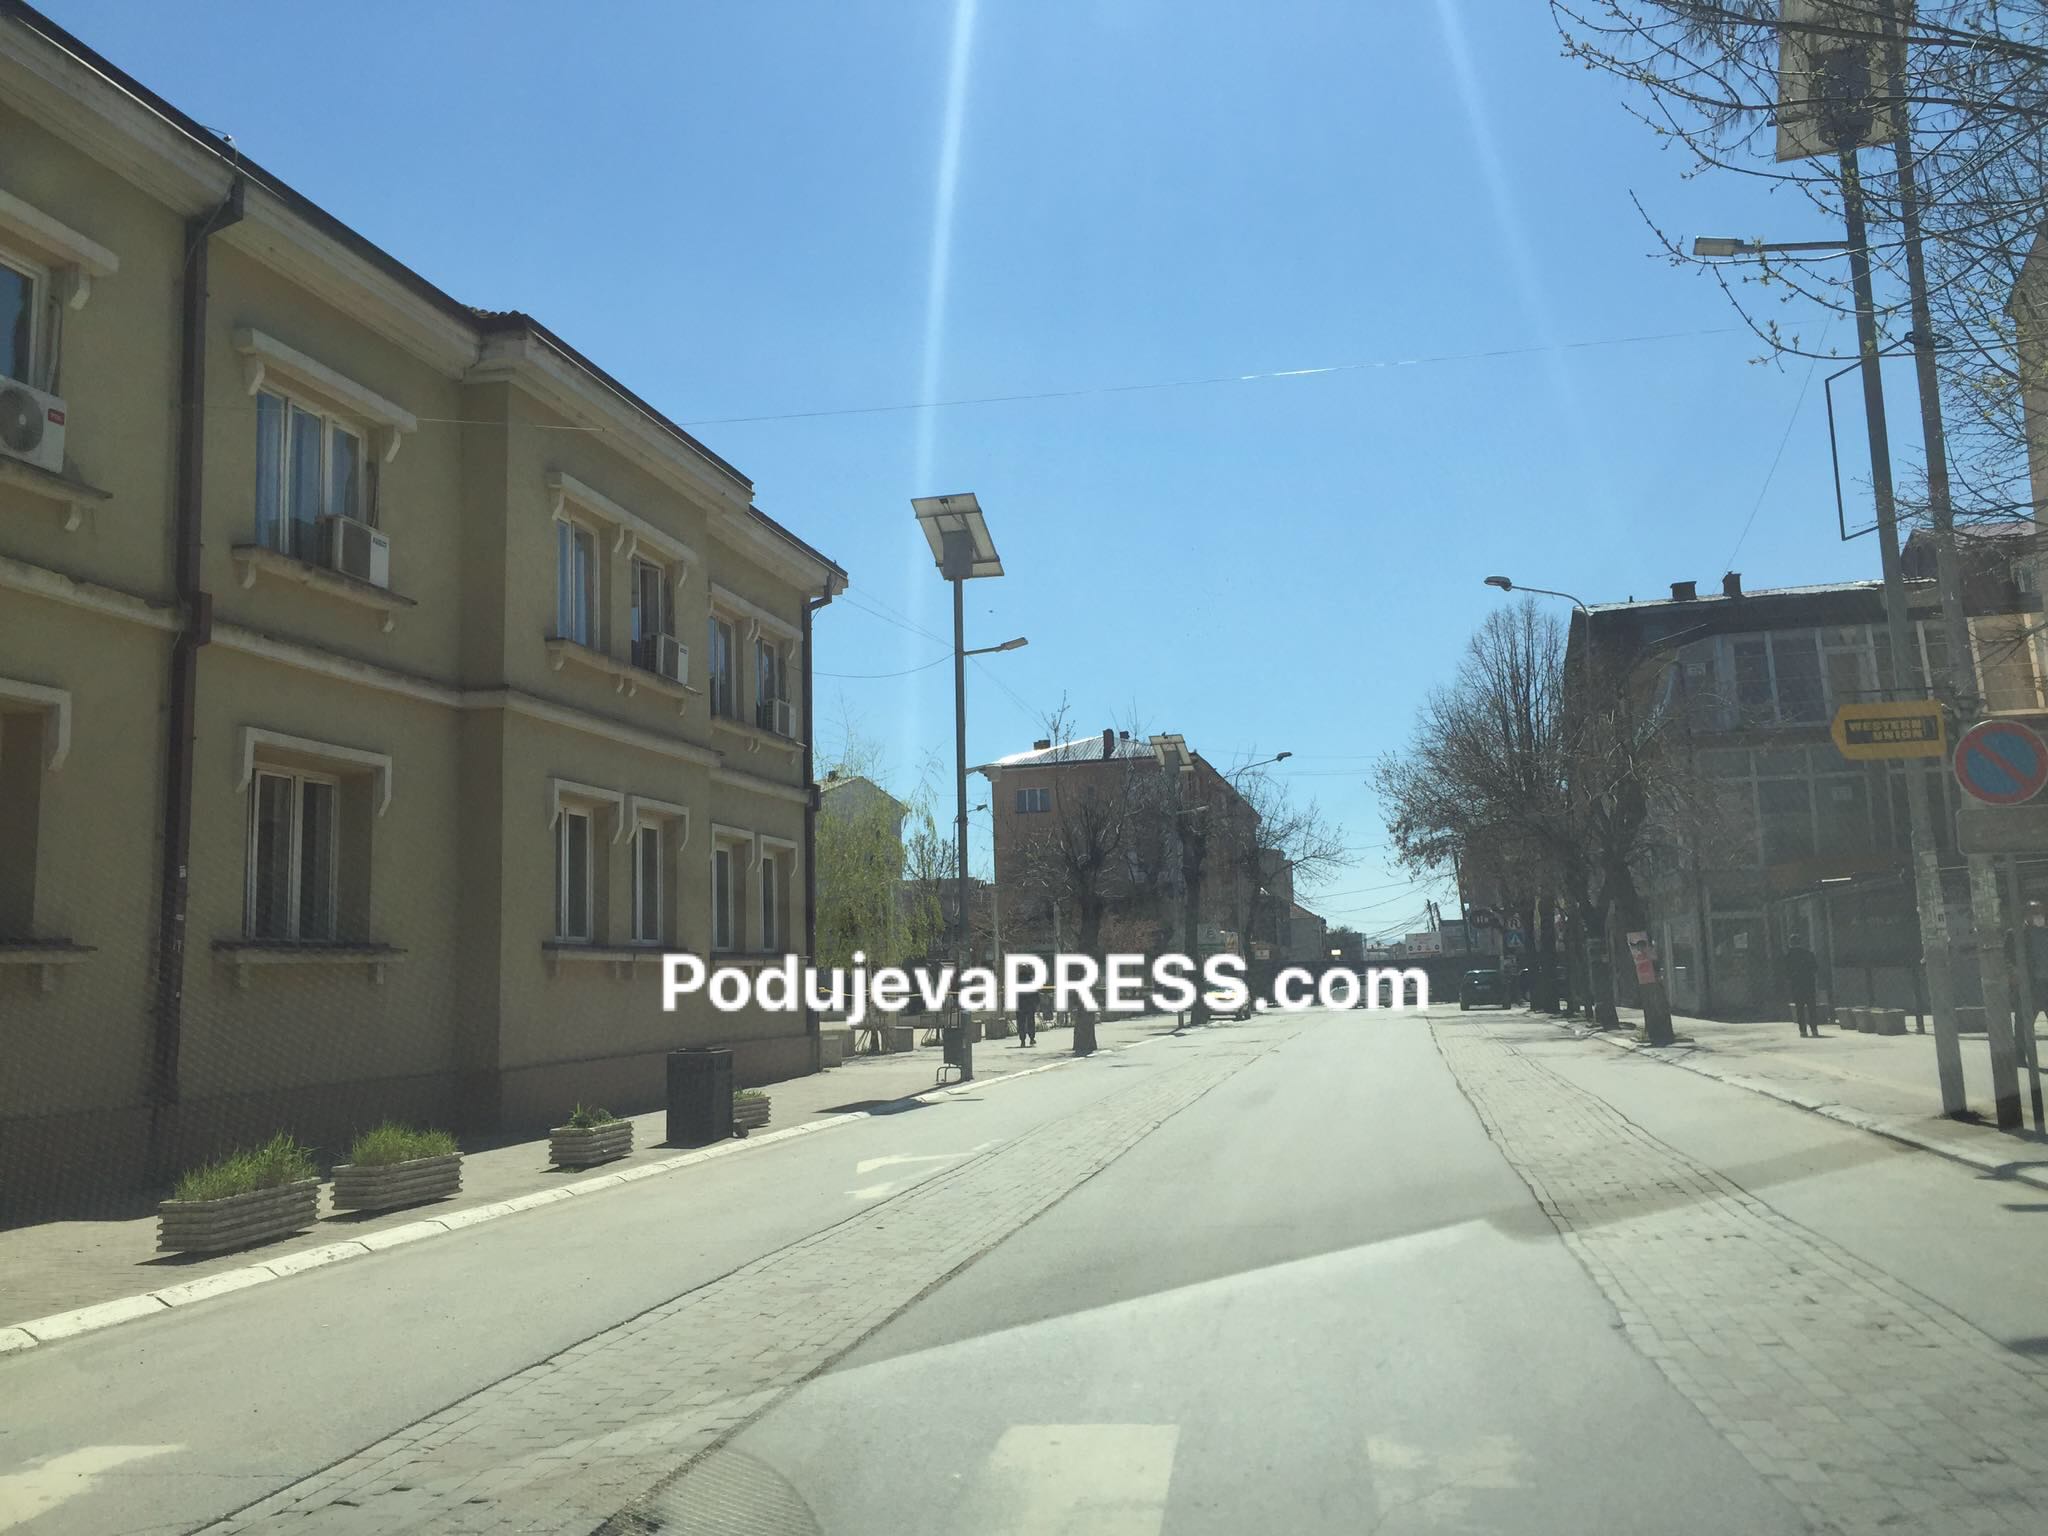  Prej ditës së sotme mbyllet edhe një pjesë e rrugës “Zahir Pajaziti” në Podujevë